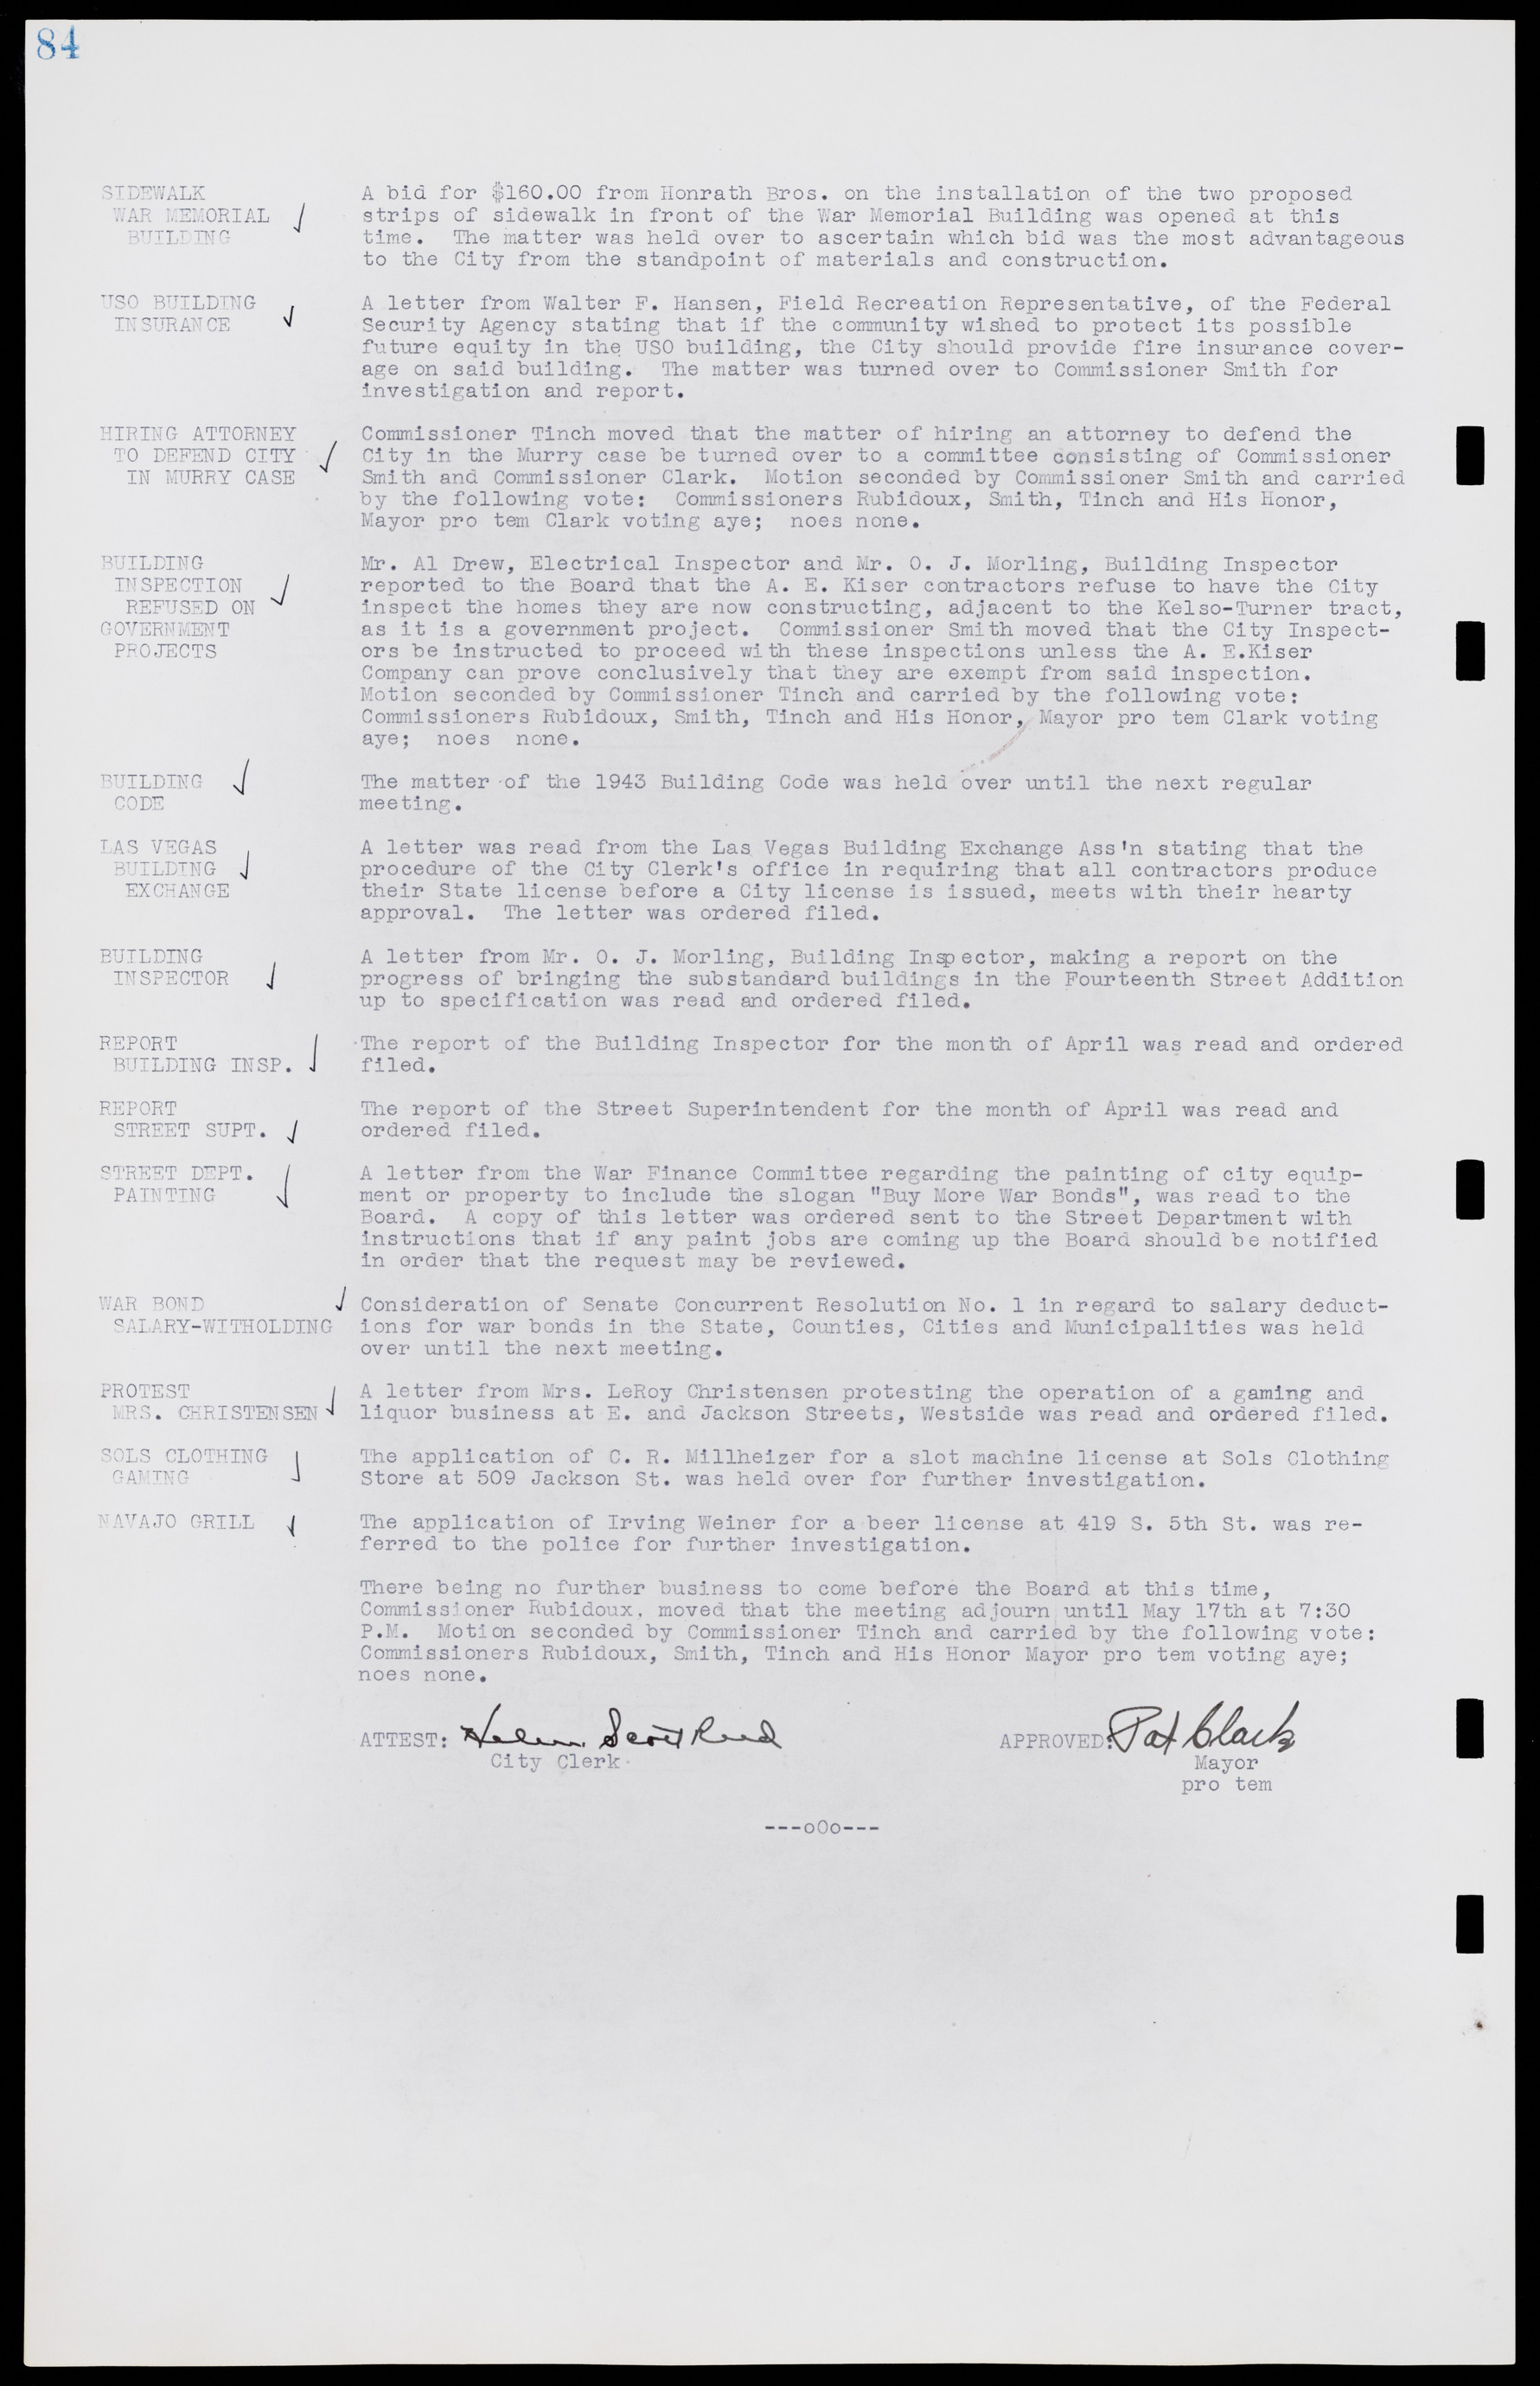 Las Vegas City Commission Minutes, August 11, 1942 to December 30, 1946, lvc000005-96